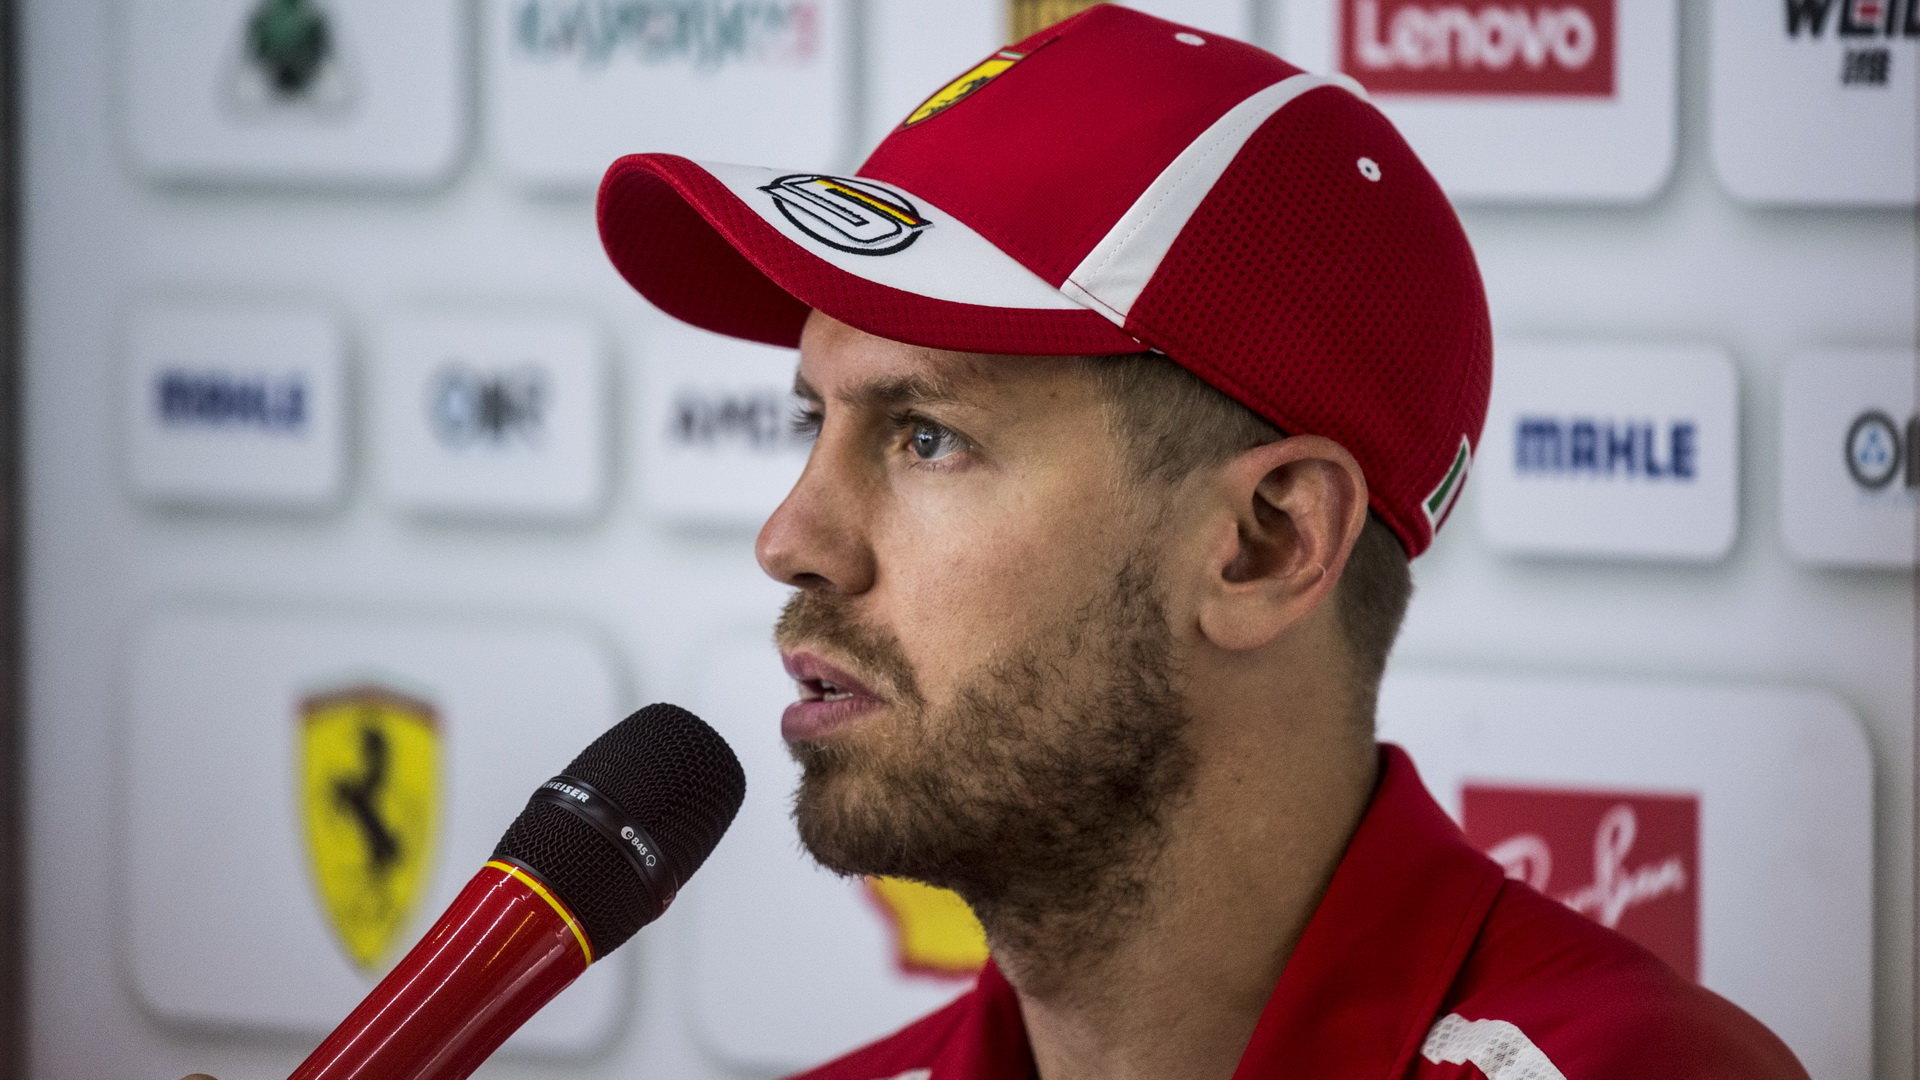 Sebastian Vettel si průběh Velké ceny Brazílie po kvalifikaci představoval jinak